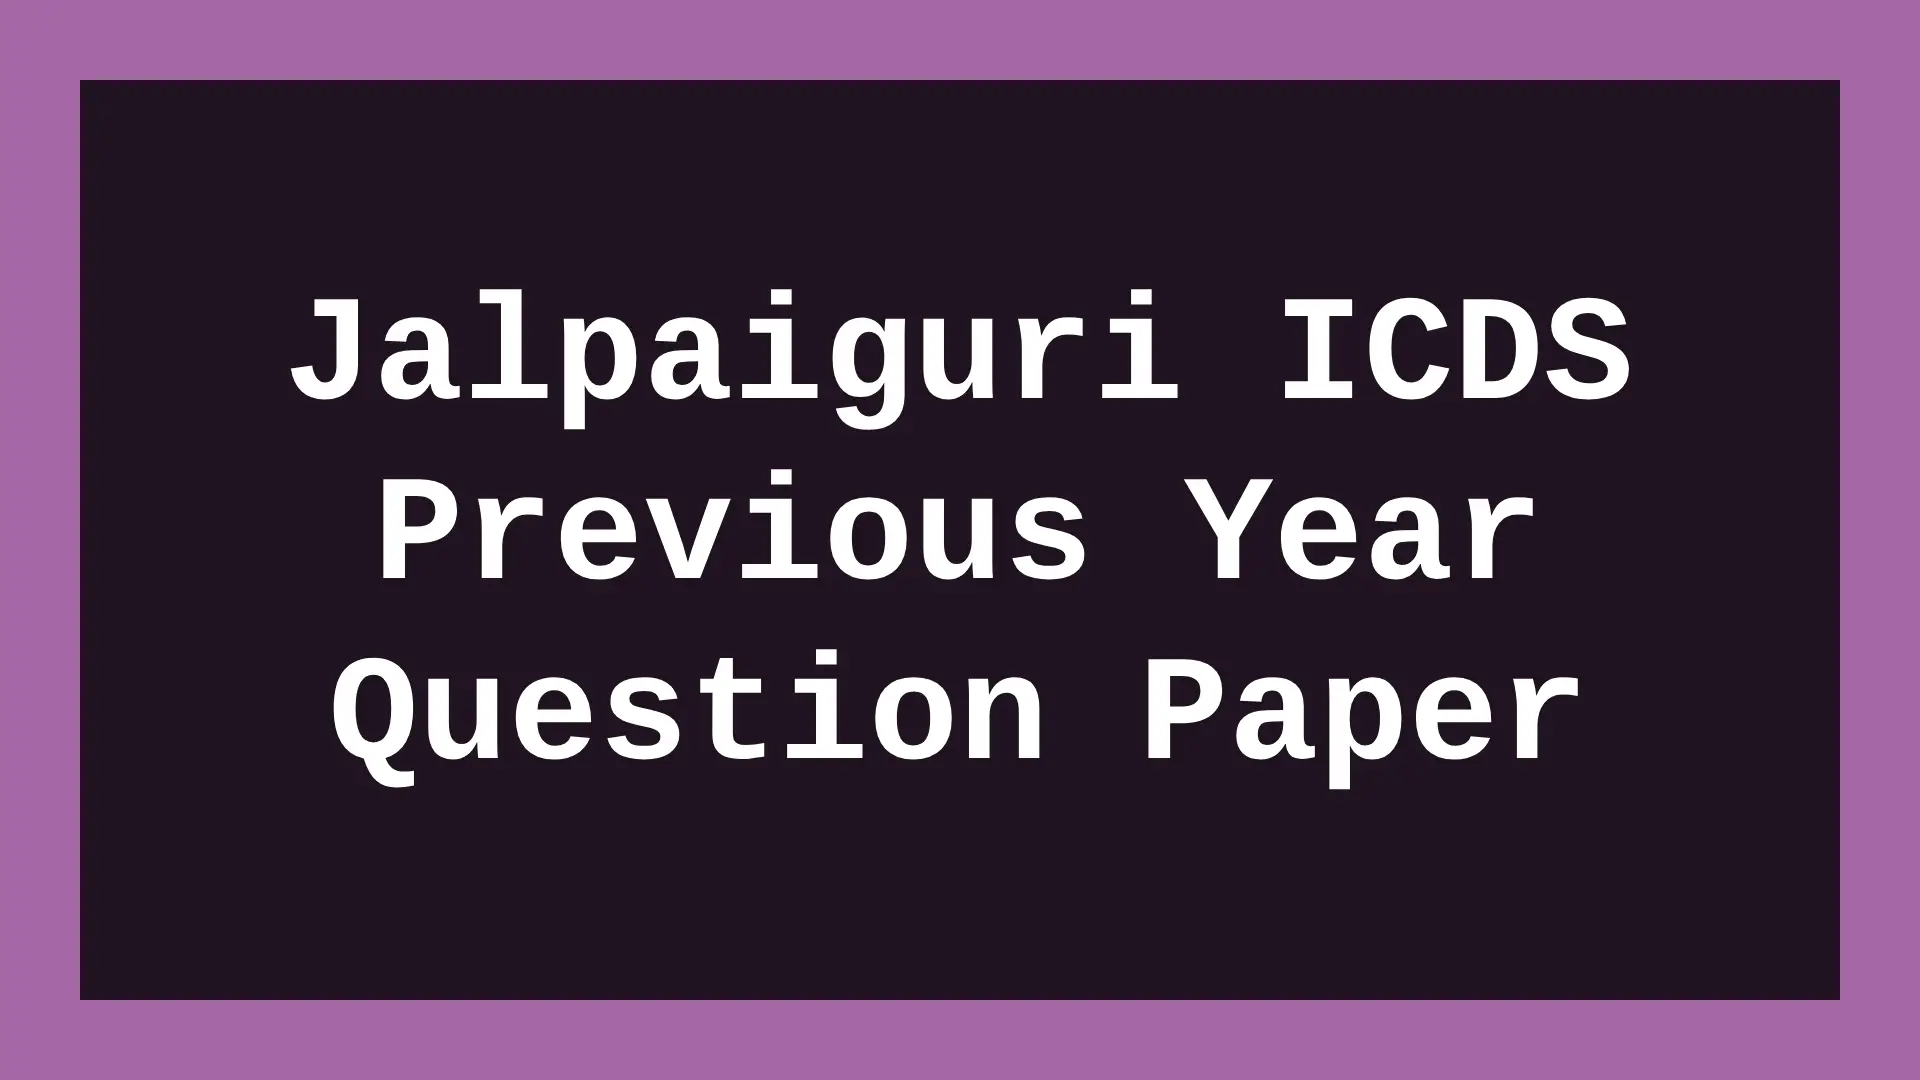 Jalpaiguri ICDS Previous Year Question Paper